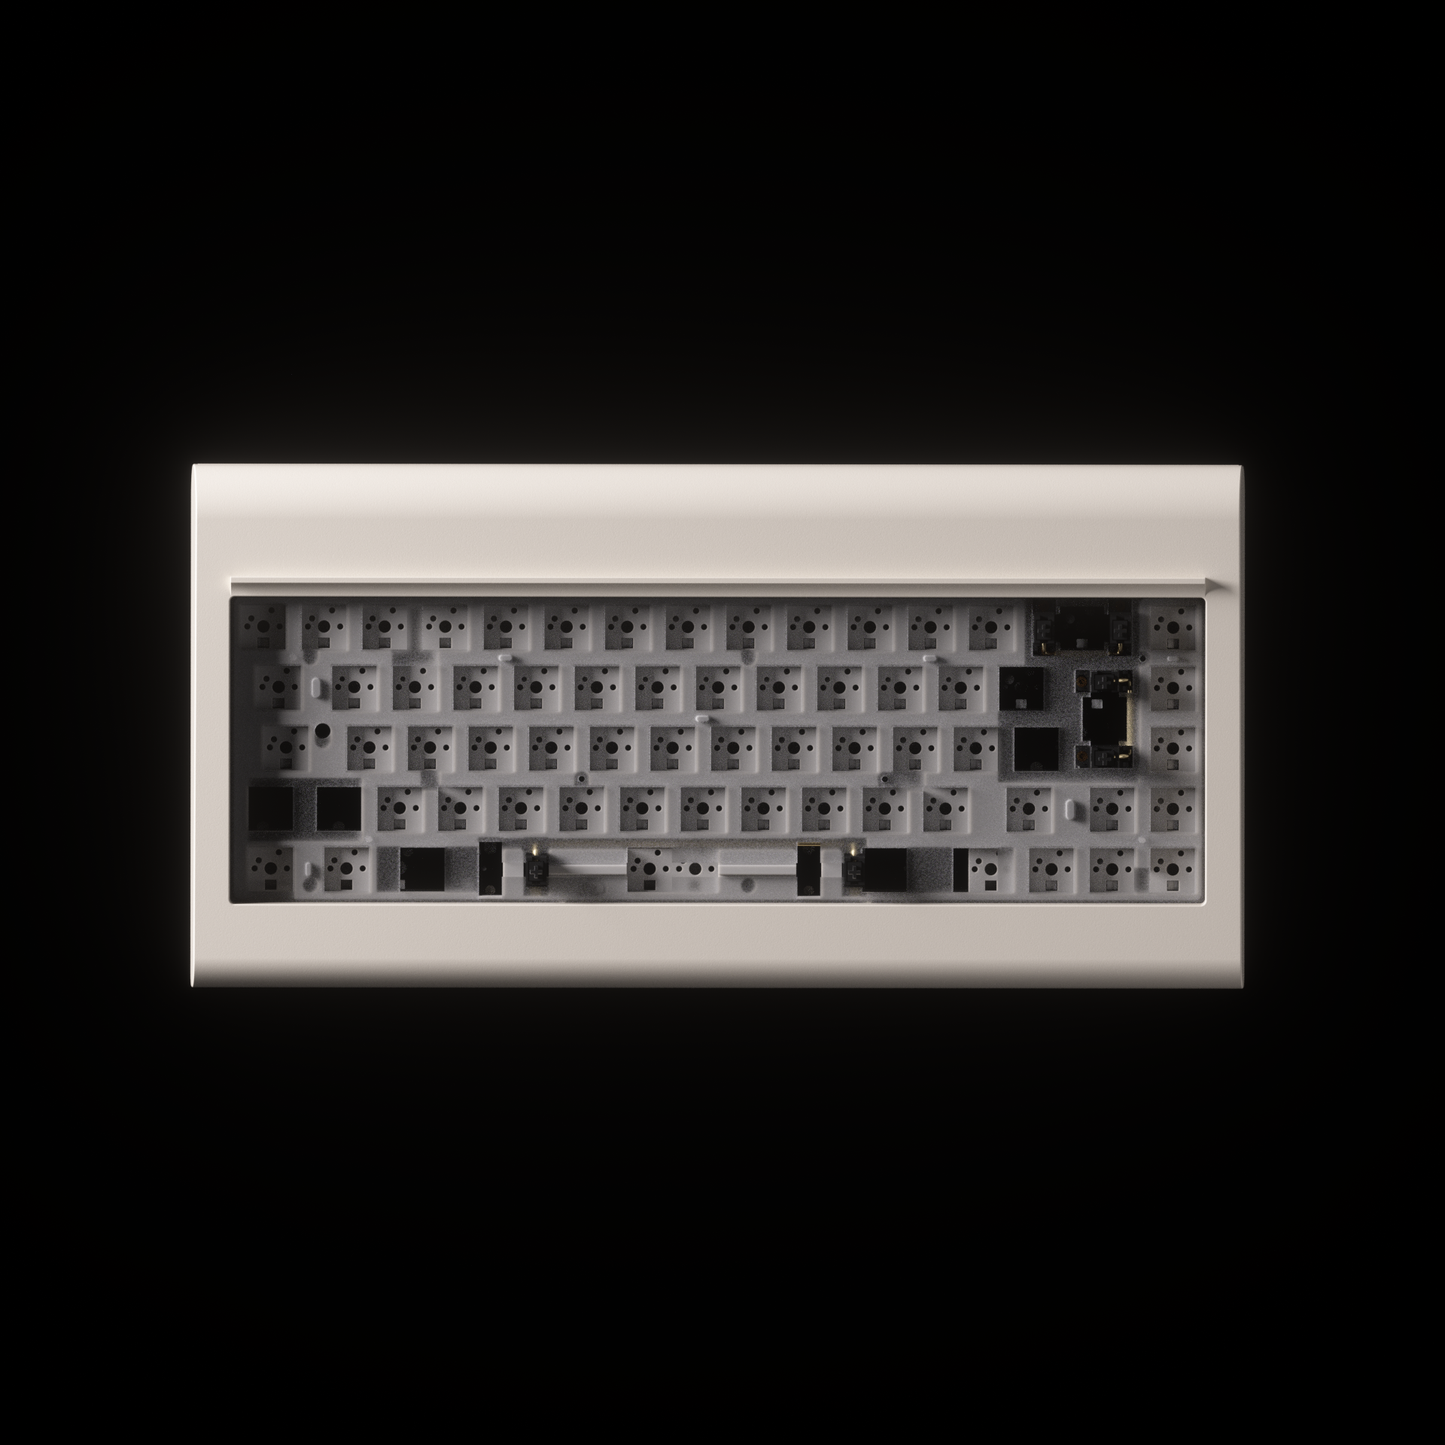 PC66 Barebone (68 Key)